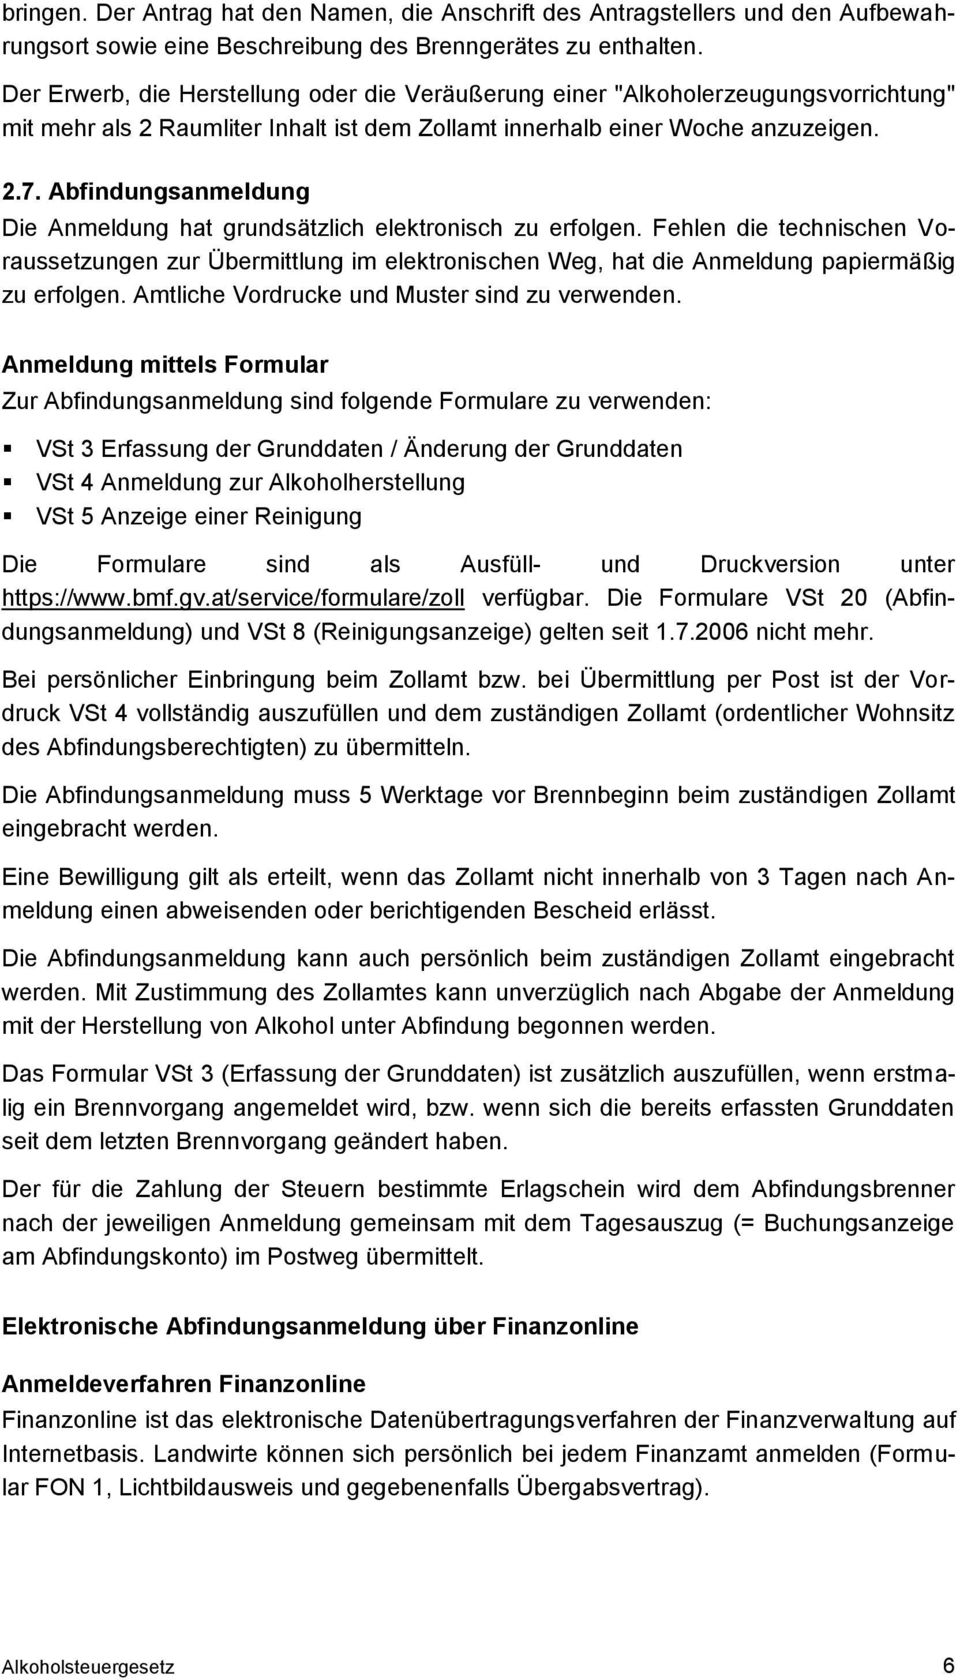 Alkoholsteuergesetz Dr Karl Penninger Rechtsabteilung Pdf